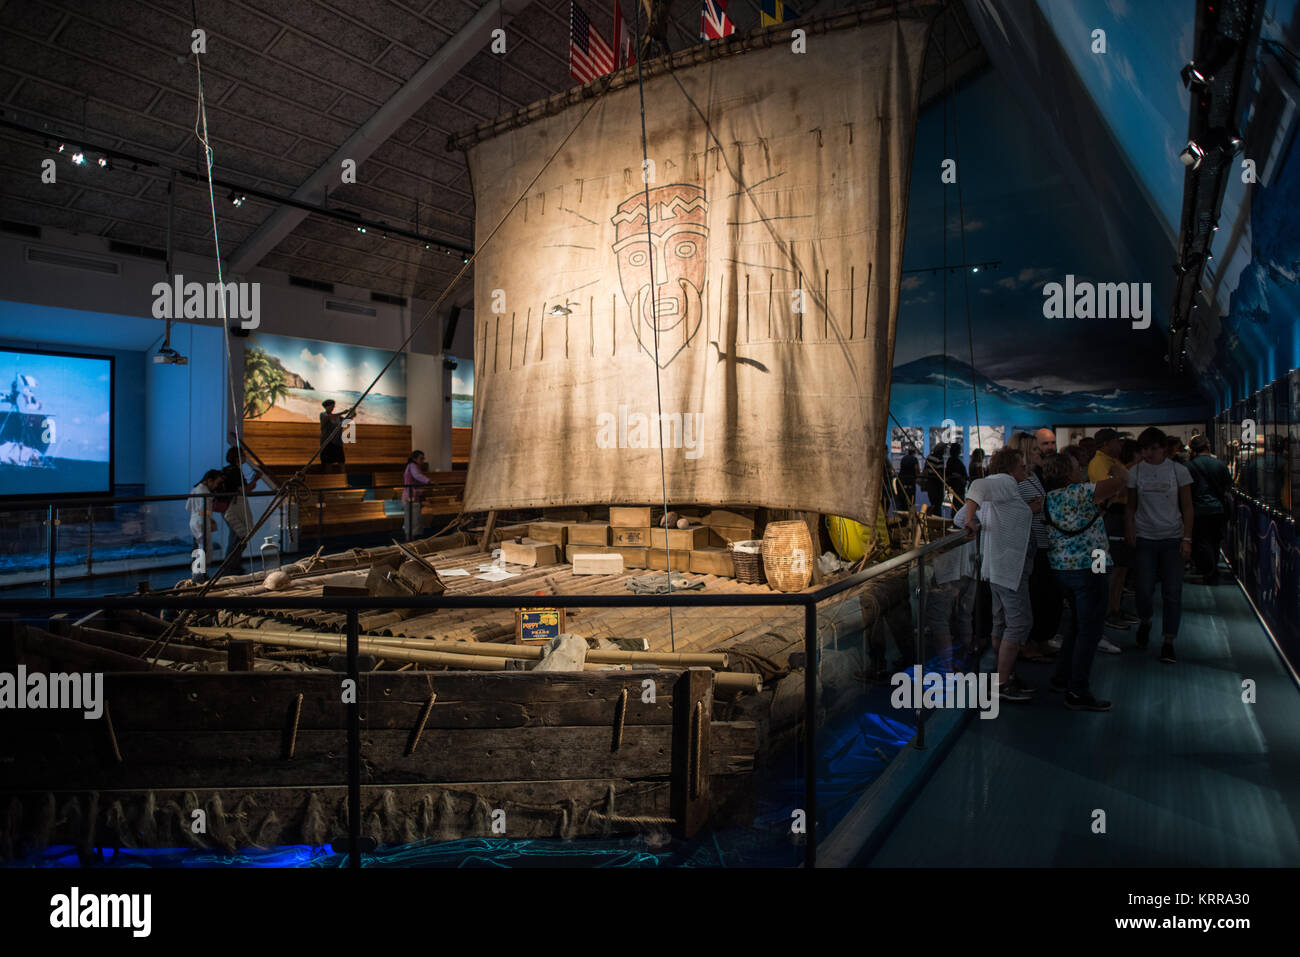 OSLO, Norwegen - Das Kon-Tiki-Museum in Oslo ist Die Kon-Tiki Expedition gewidmet, einer 1947 Reise mit dem Floß über den Pazifik von Südamerika zu den Polynesischen Inseln, geführt durch norwegische Forscher und Schriftsteller Thor Heyerdahl. Das Museum zeigt den ursprünglichen Kon-Tiki aus Balsaholz Schiff sowie die Ra II, ein Boot überwiegend aus Schilf, Heyerdahl aus Nordafrika in die Karibik gesegelt. Stockfoto